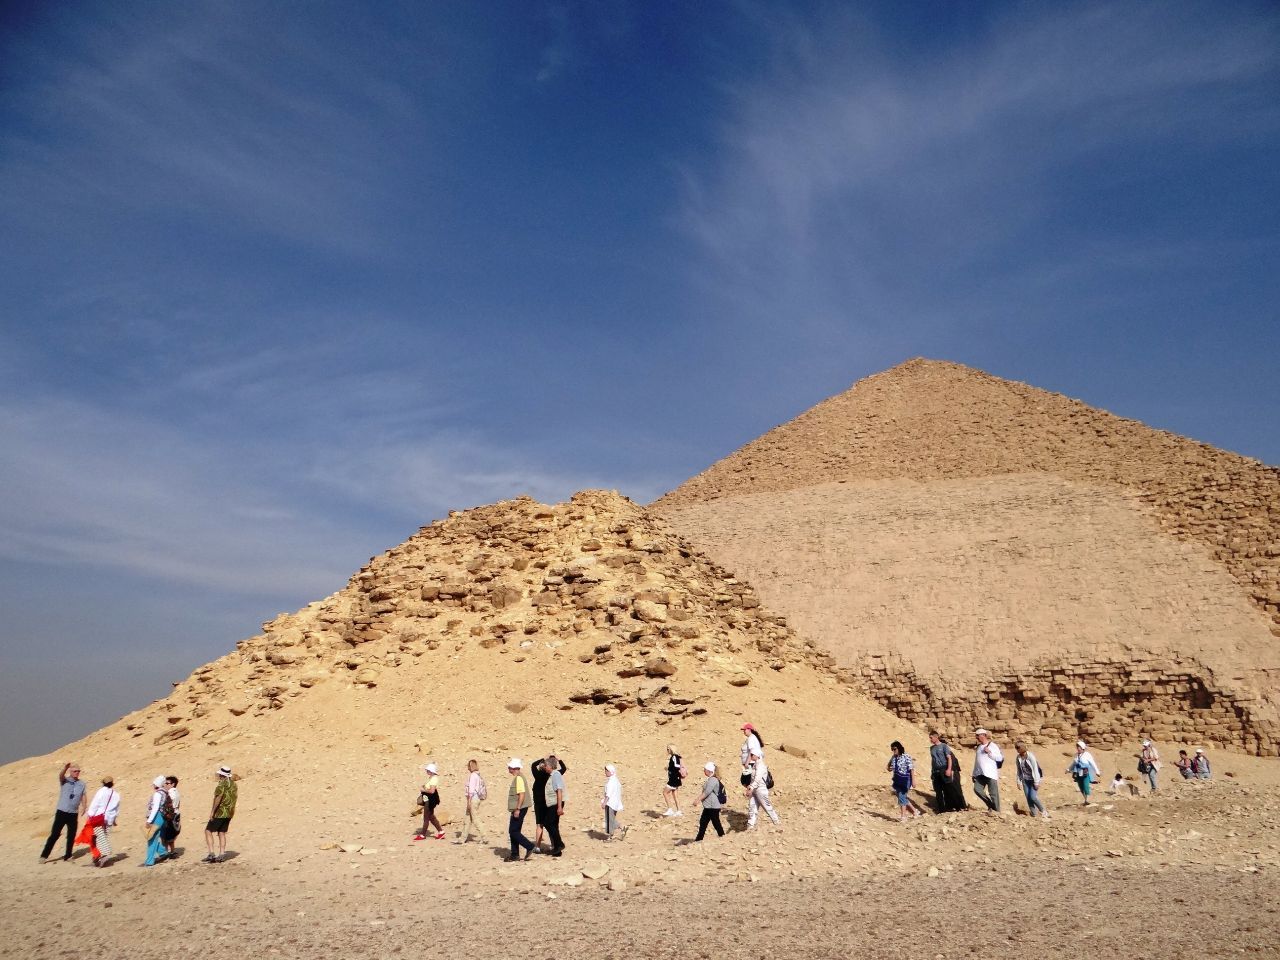 Фотоотчет Египет 2021. ЧАСТЬ 2. Пирамиды Дахшура.